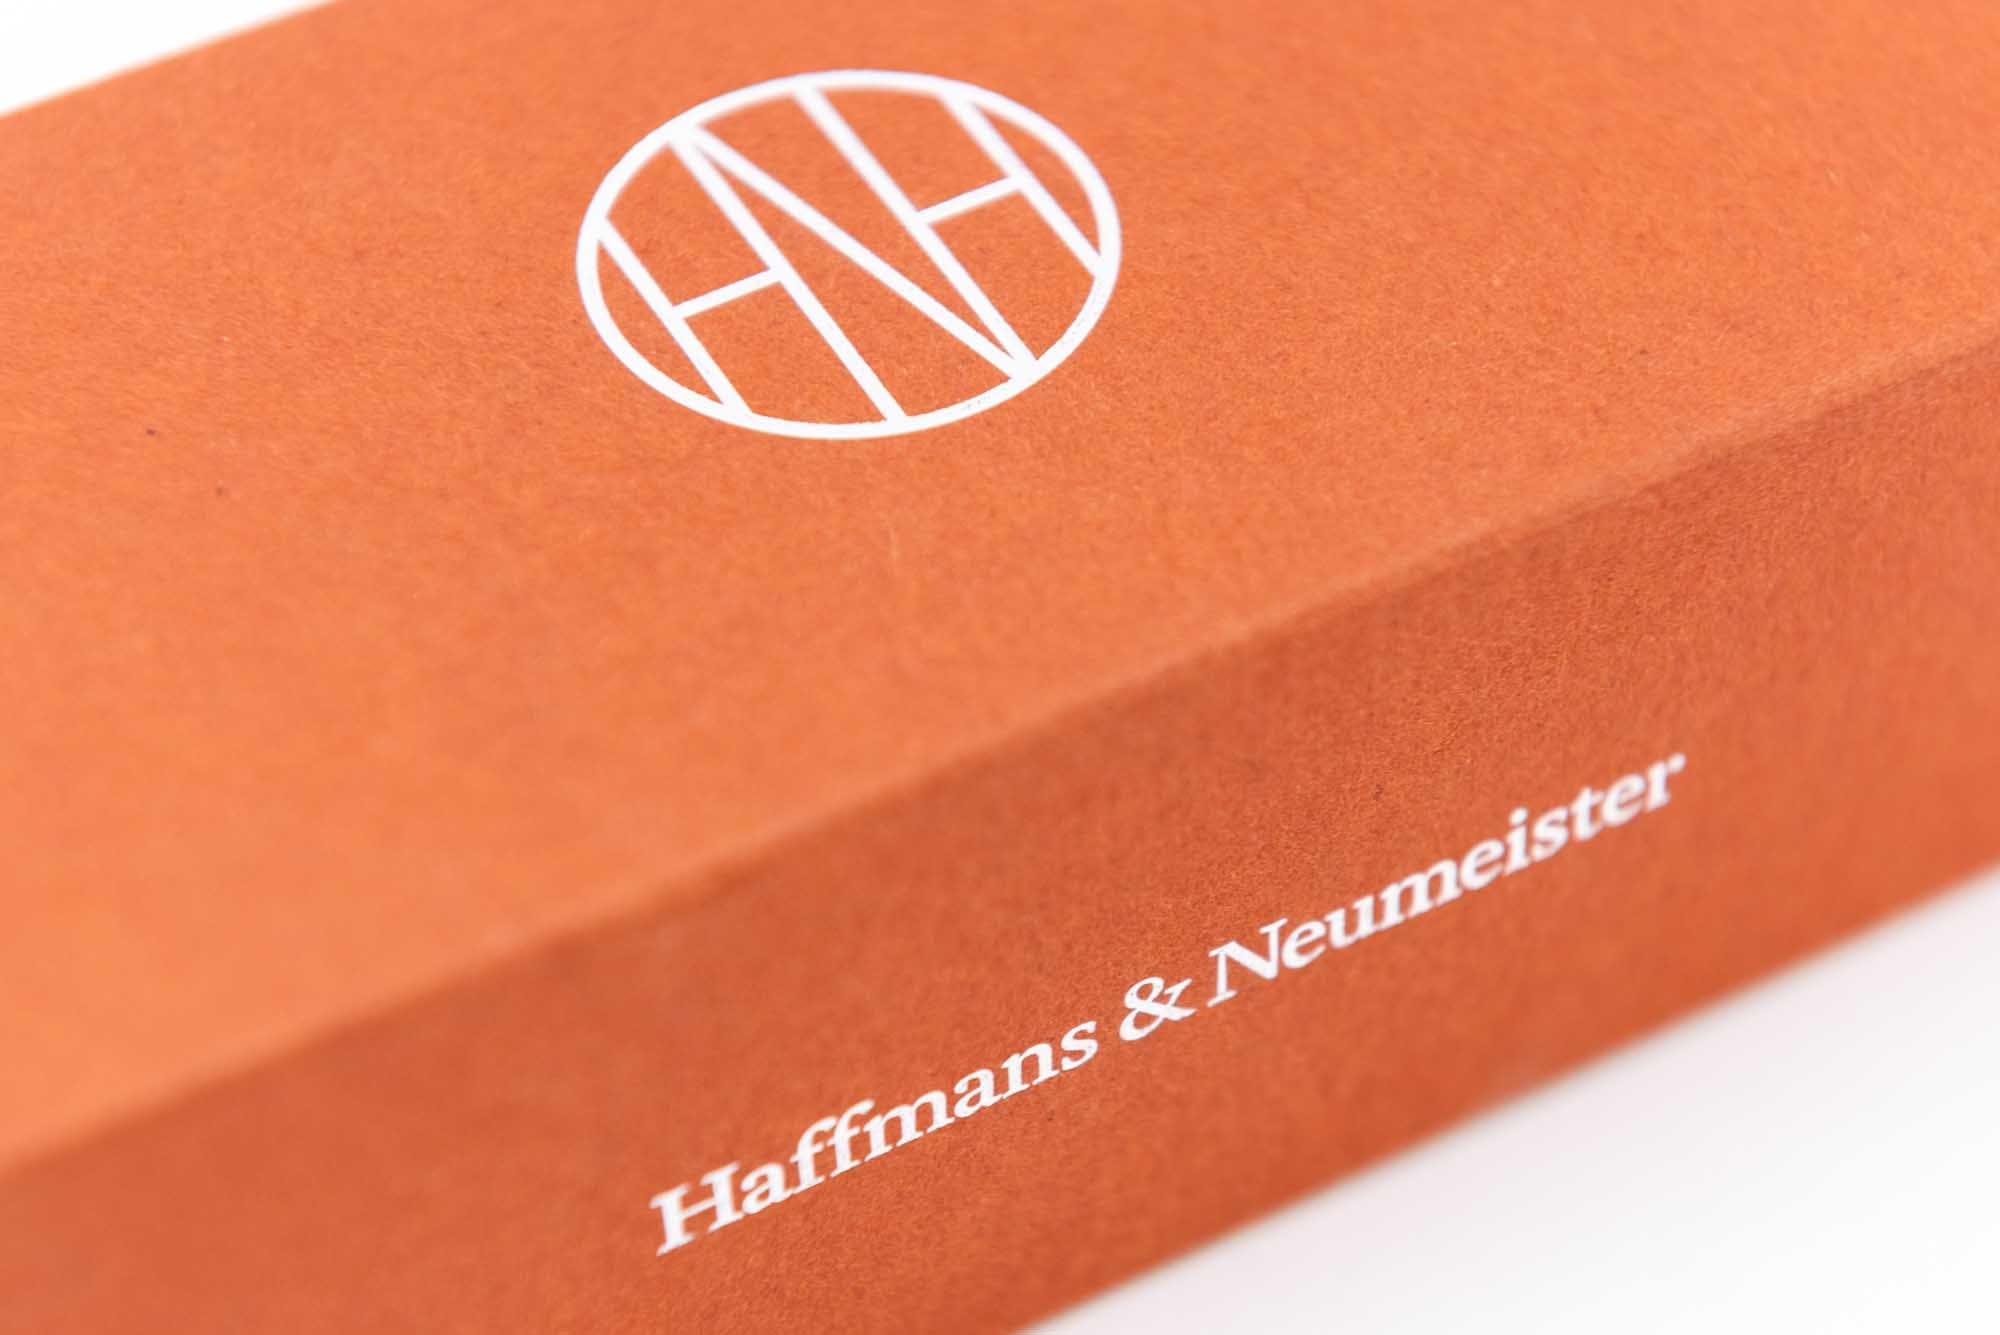 Haffmans & Neumeister: Hursh 002